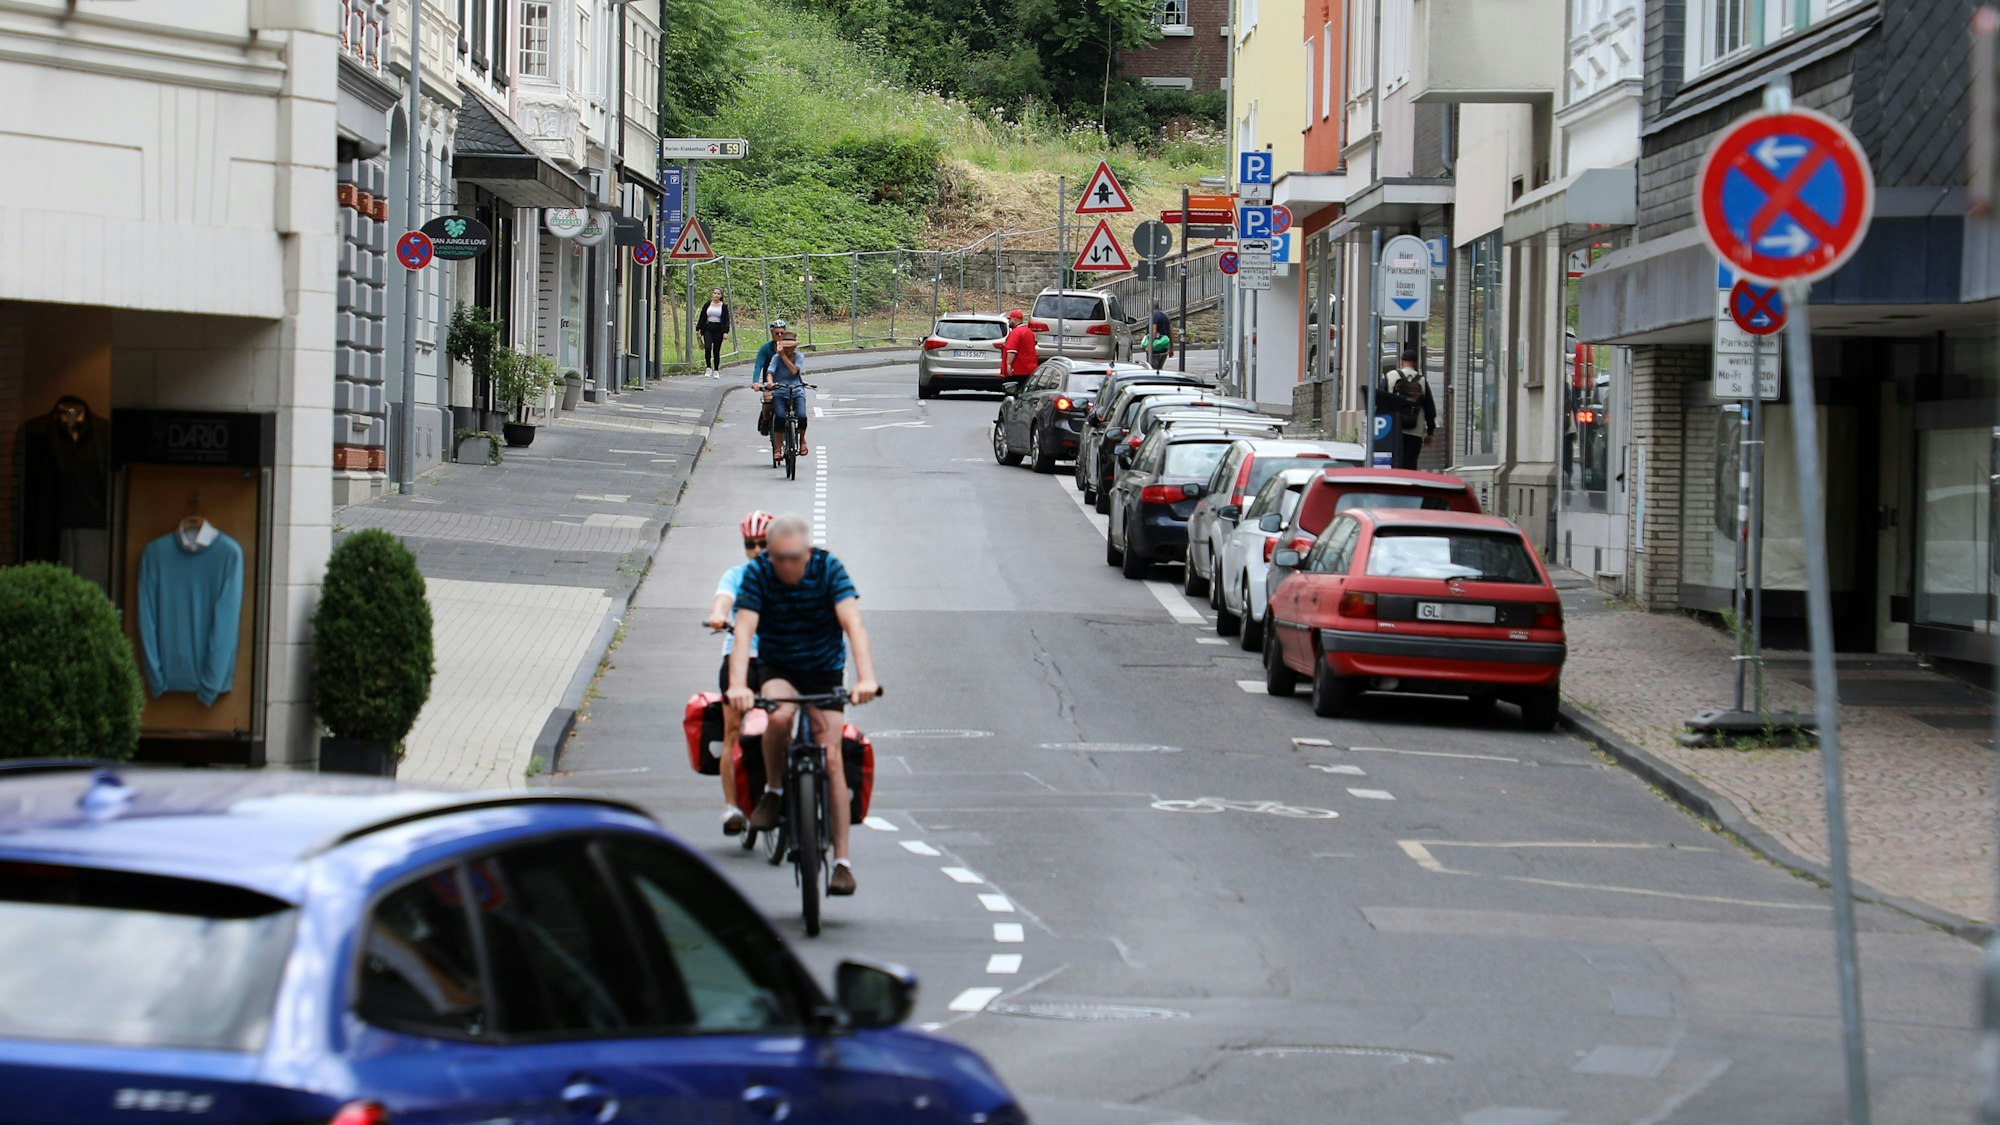 Die Laurentiusstraße in Bergisch Gladbach mit Fahrradfahrenden, Autos und Häusern.